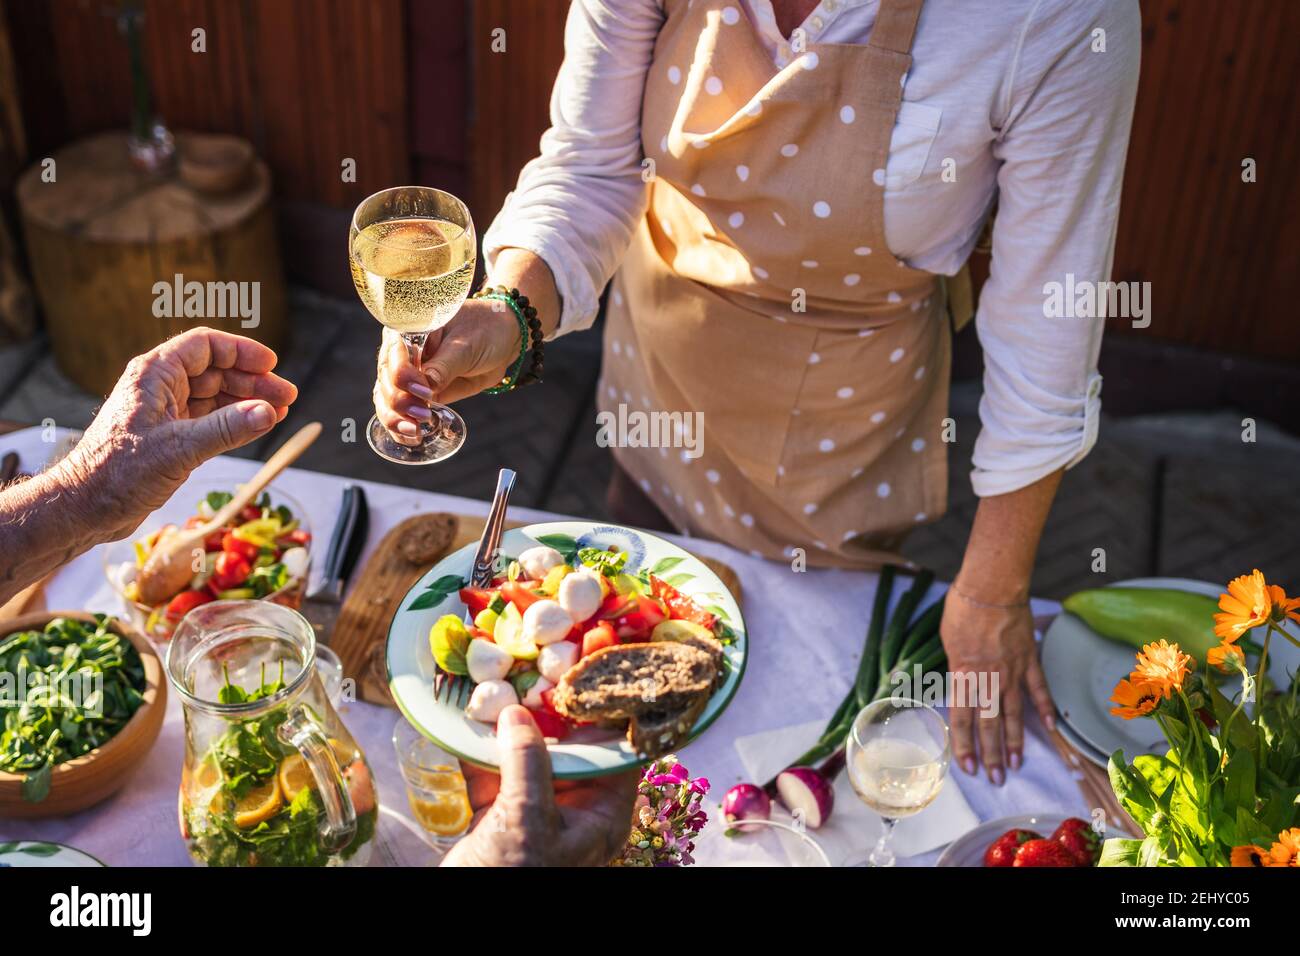 Goditi il vino bianco e l'insalata di verdure durante la festa in giardino. La donna serve cibo e bevande a un'altra persona durante un evento di celebrazione all'aperto Foto Stock